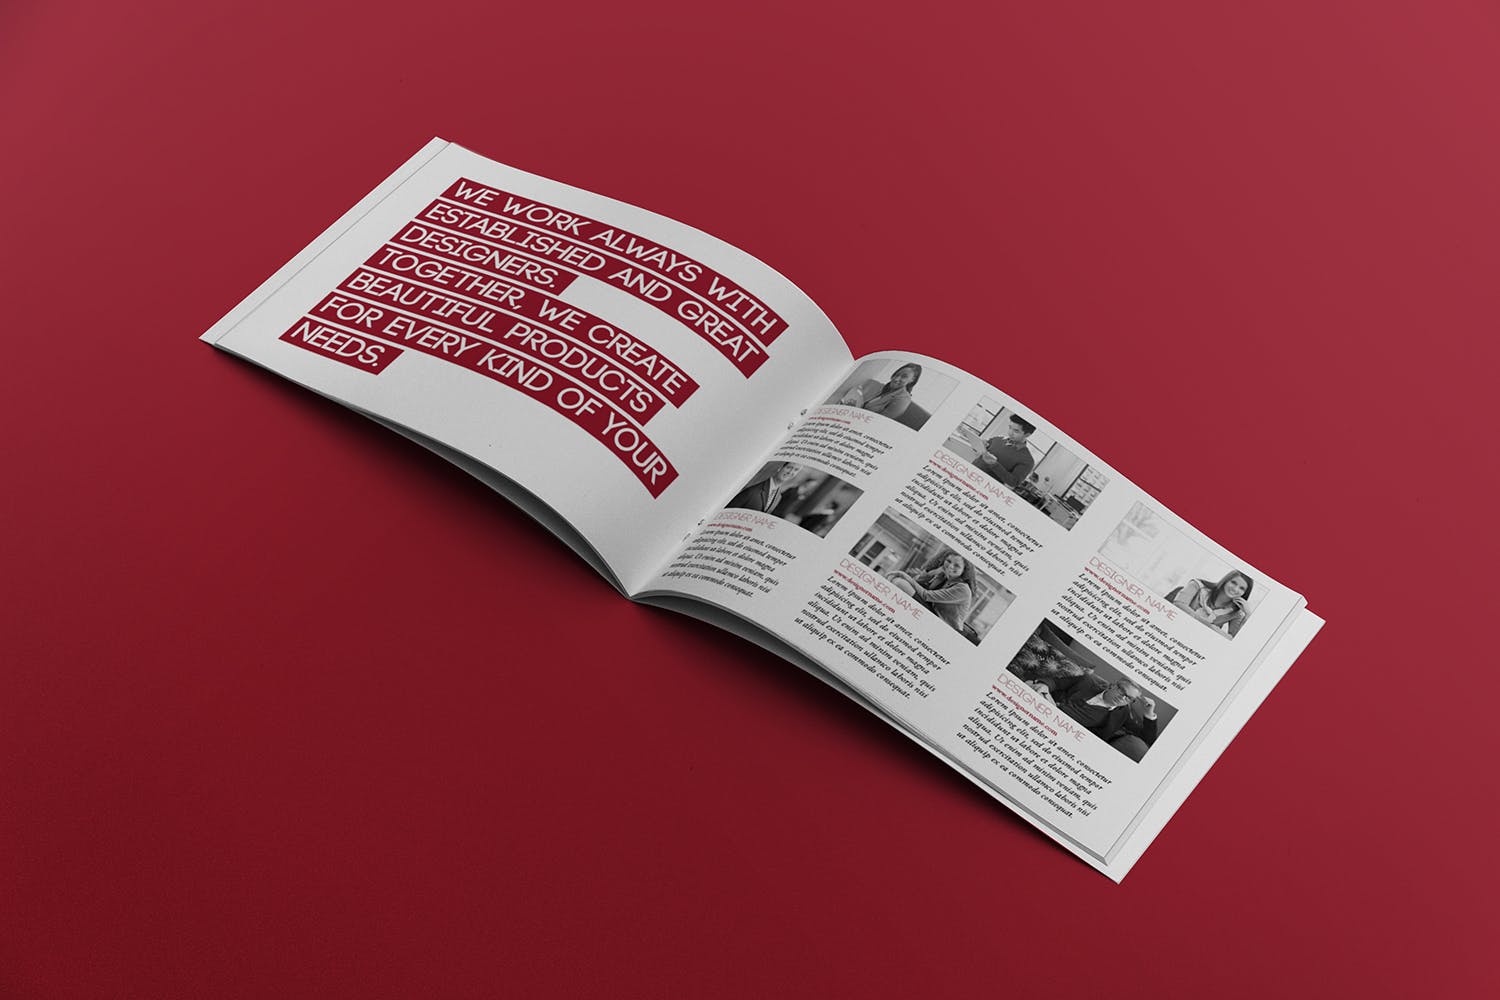 宣传画册/企业画册内页版式设计图样机第一素材精选 Open Landscape Brochure Mockup插图(2)